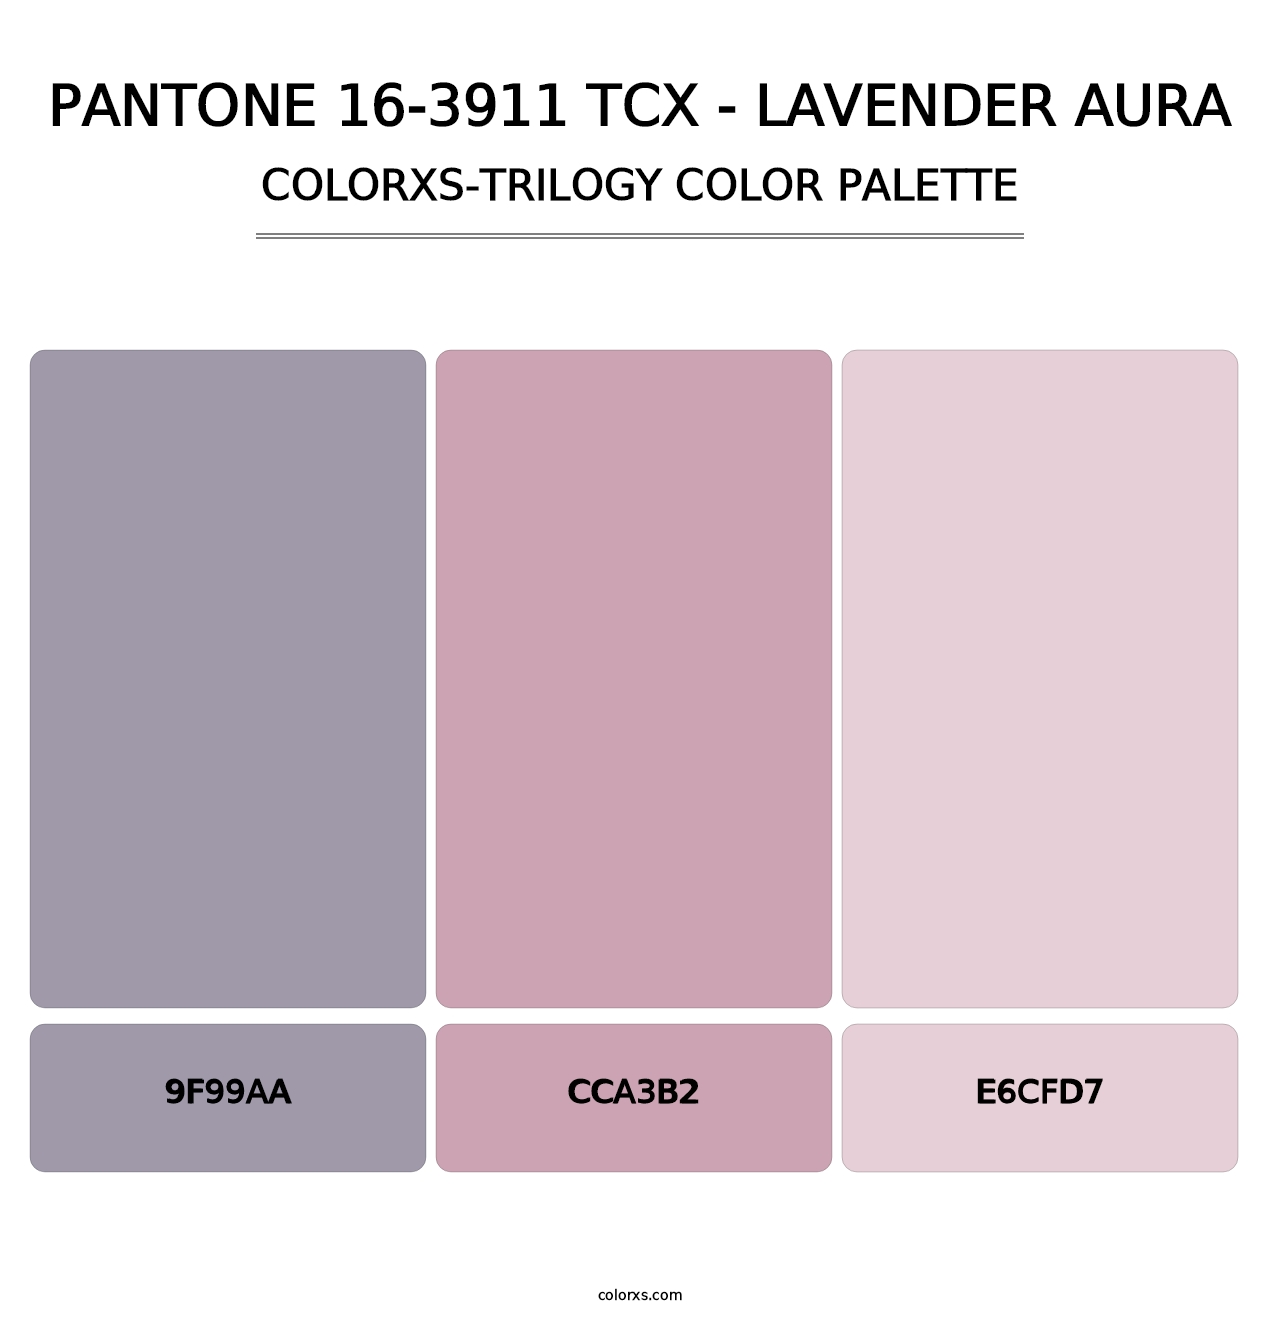 PANTONE 16-3911 TCX - Lavender Aura - Colorxs Trilogy Palette